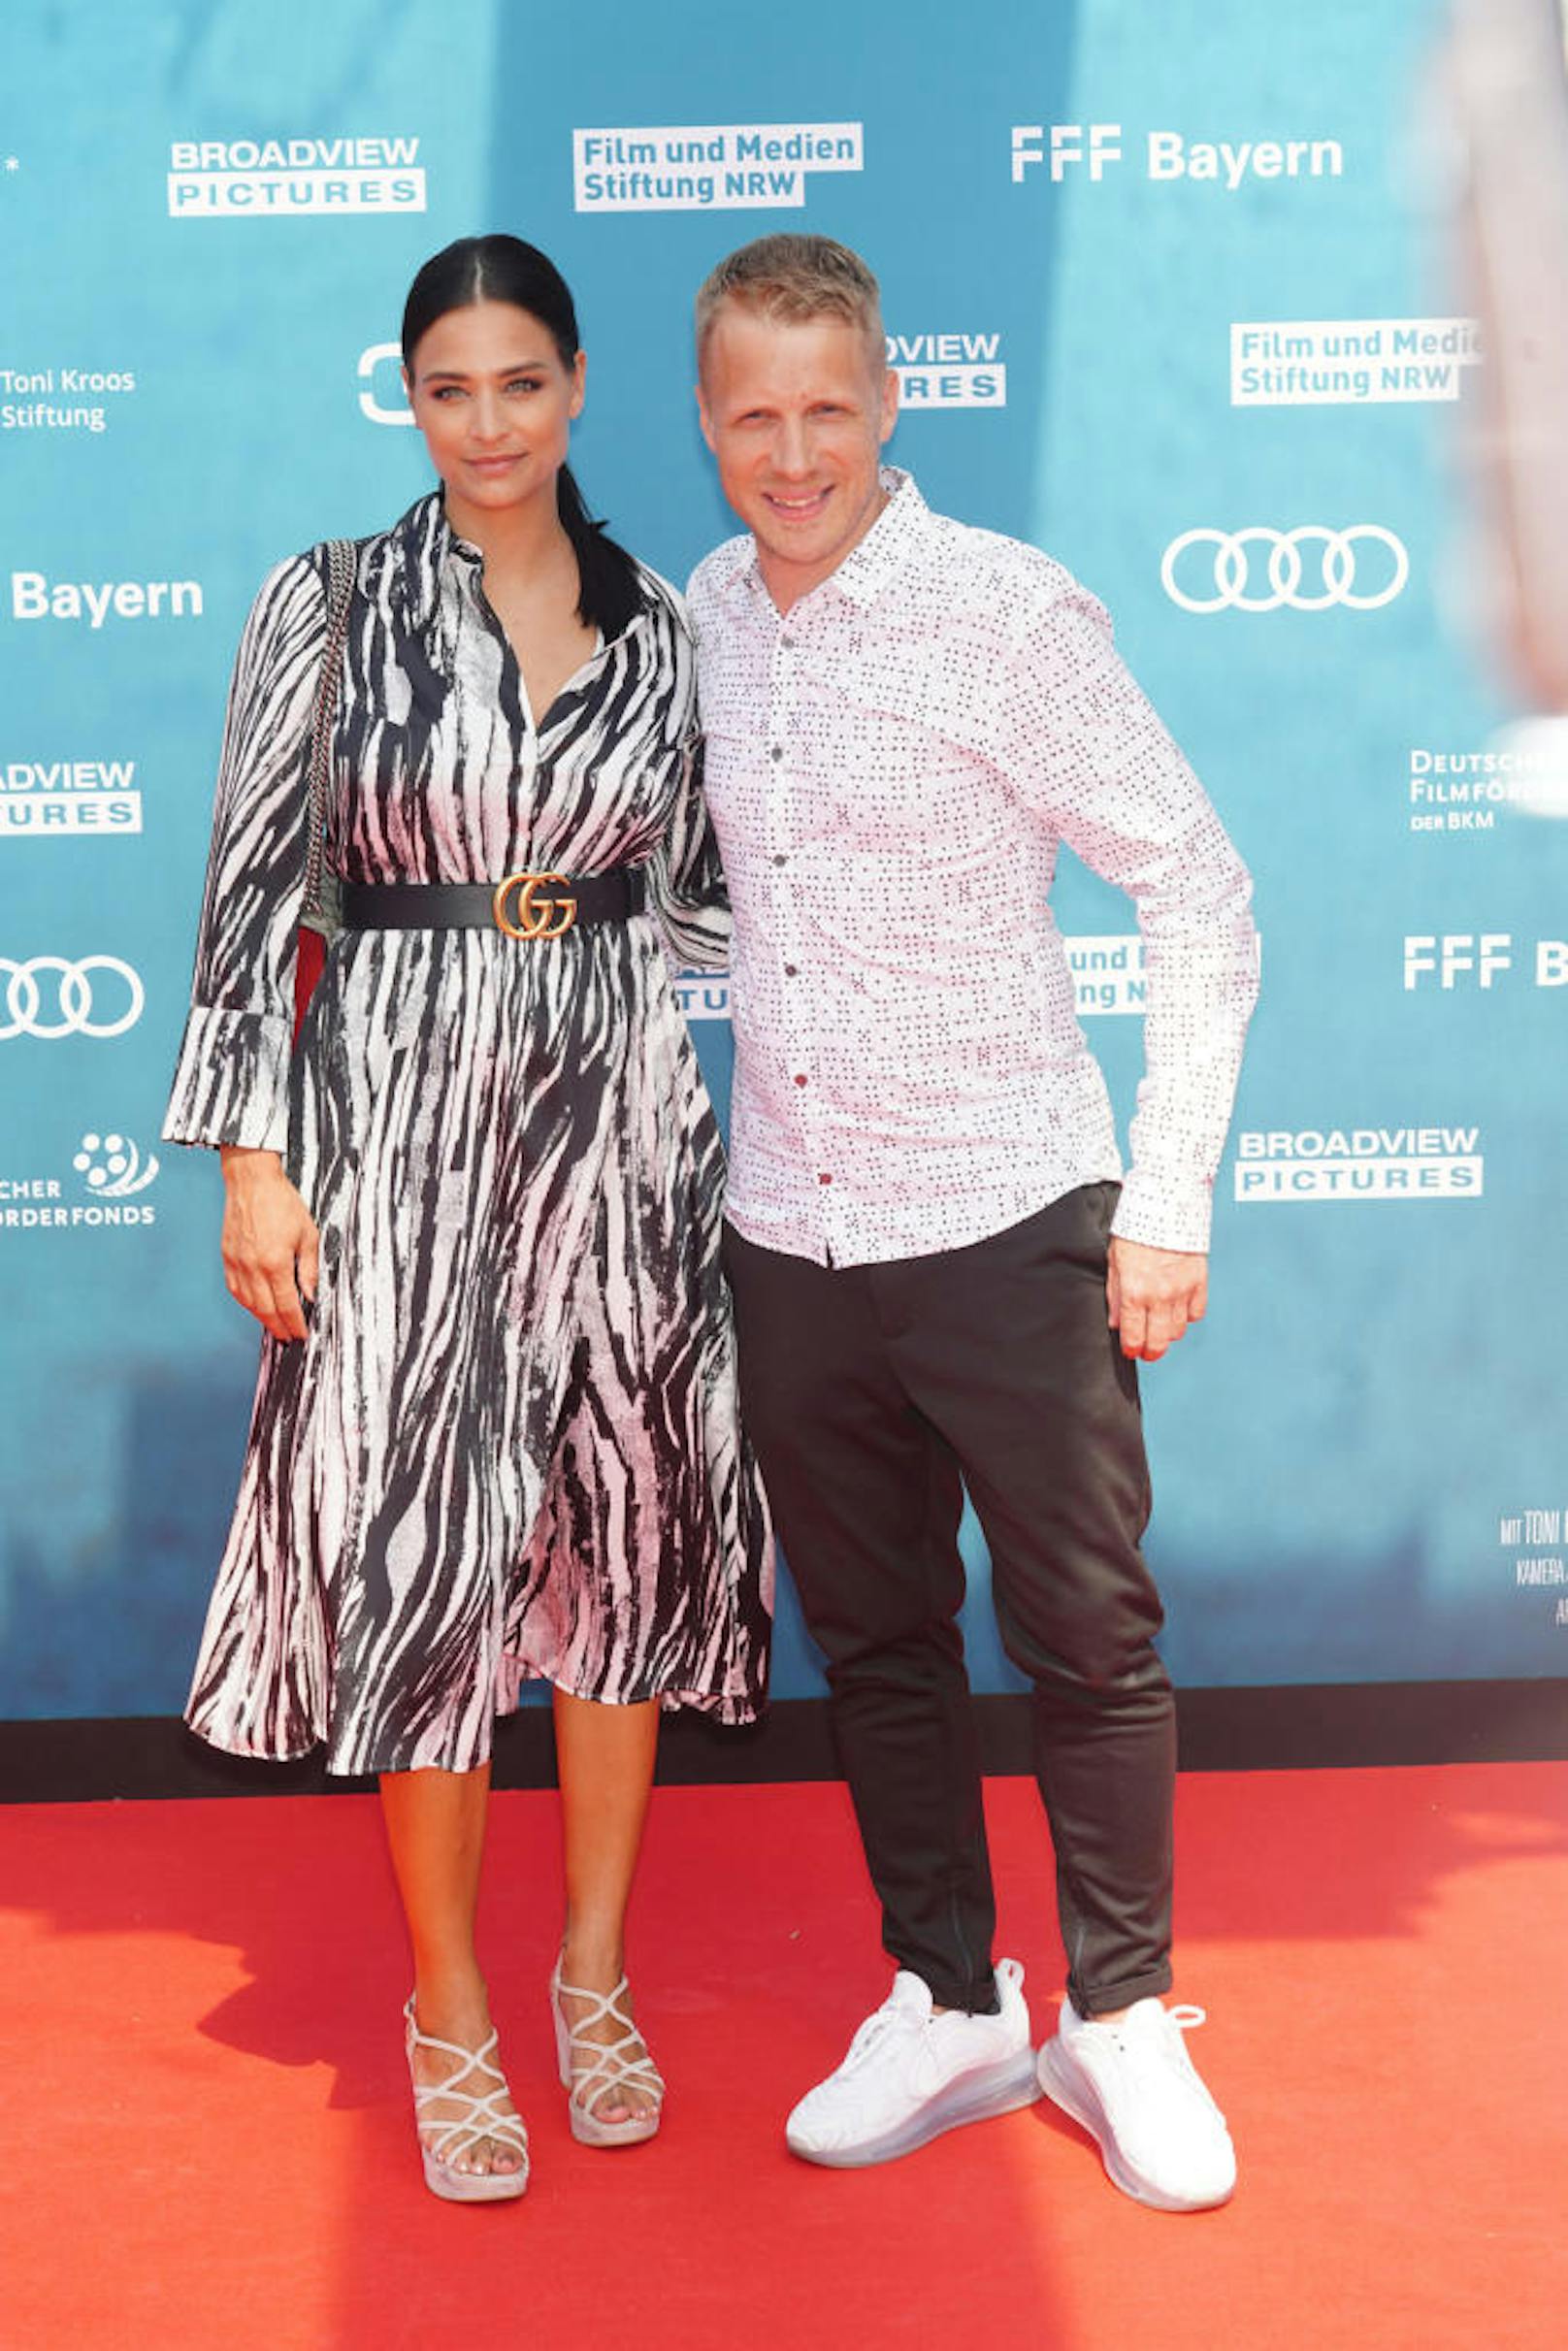 Amira Aly und Oliver Pocher bei der Weltpremiere von "Kroos" am 30. Juni 2019 in Köln